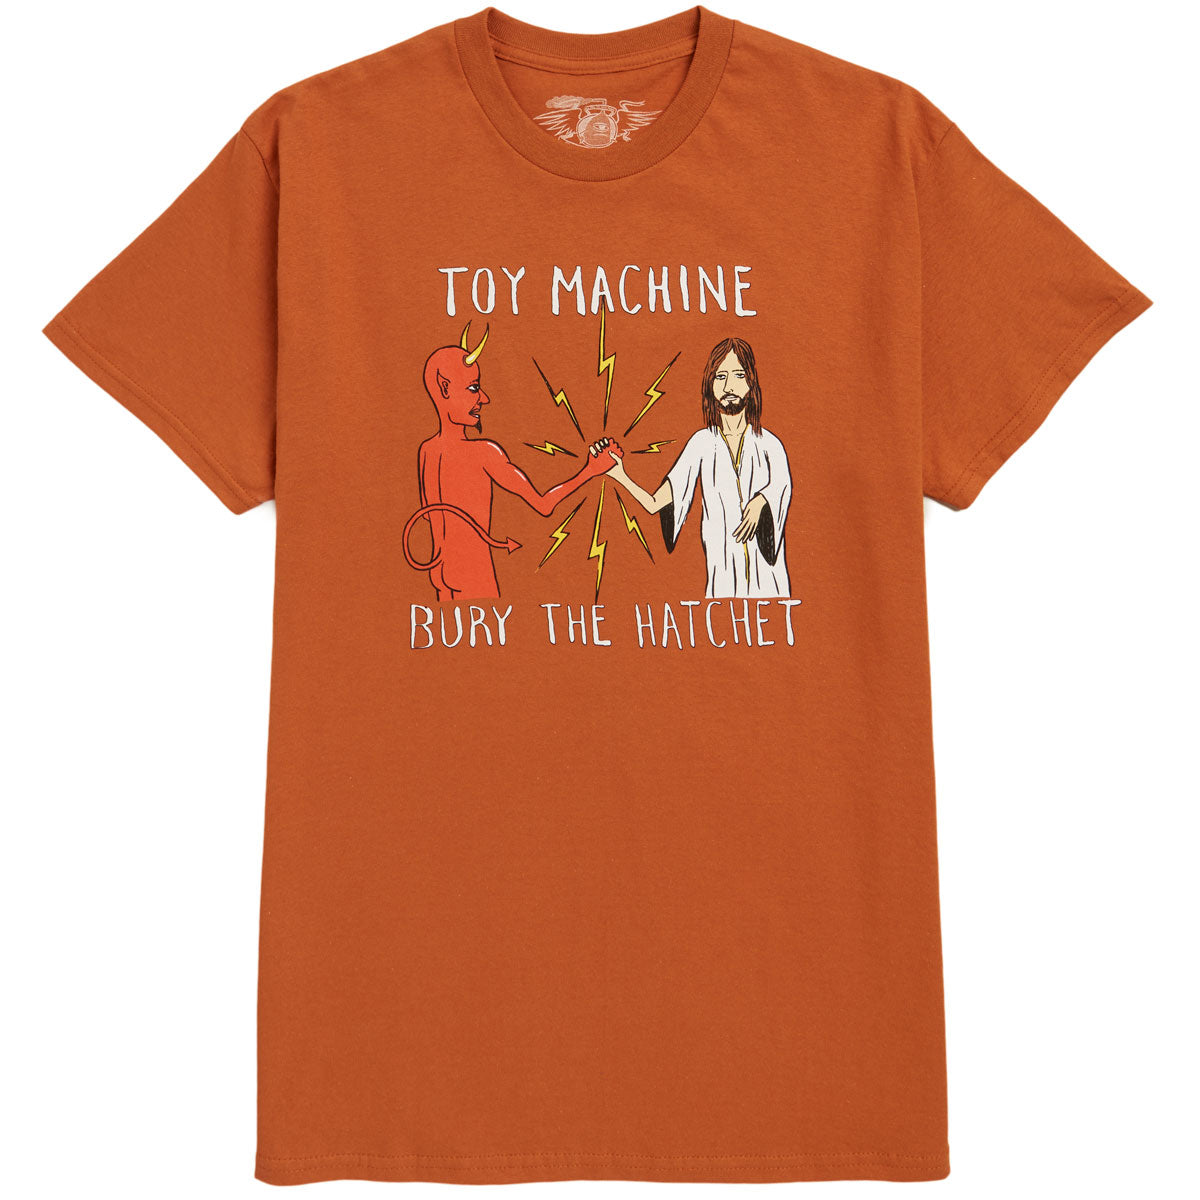 Toy Machine Bury The Hatchet T-Shirt - Ocher image 1